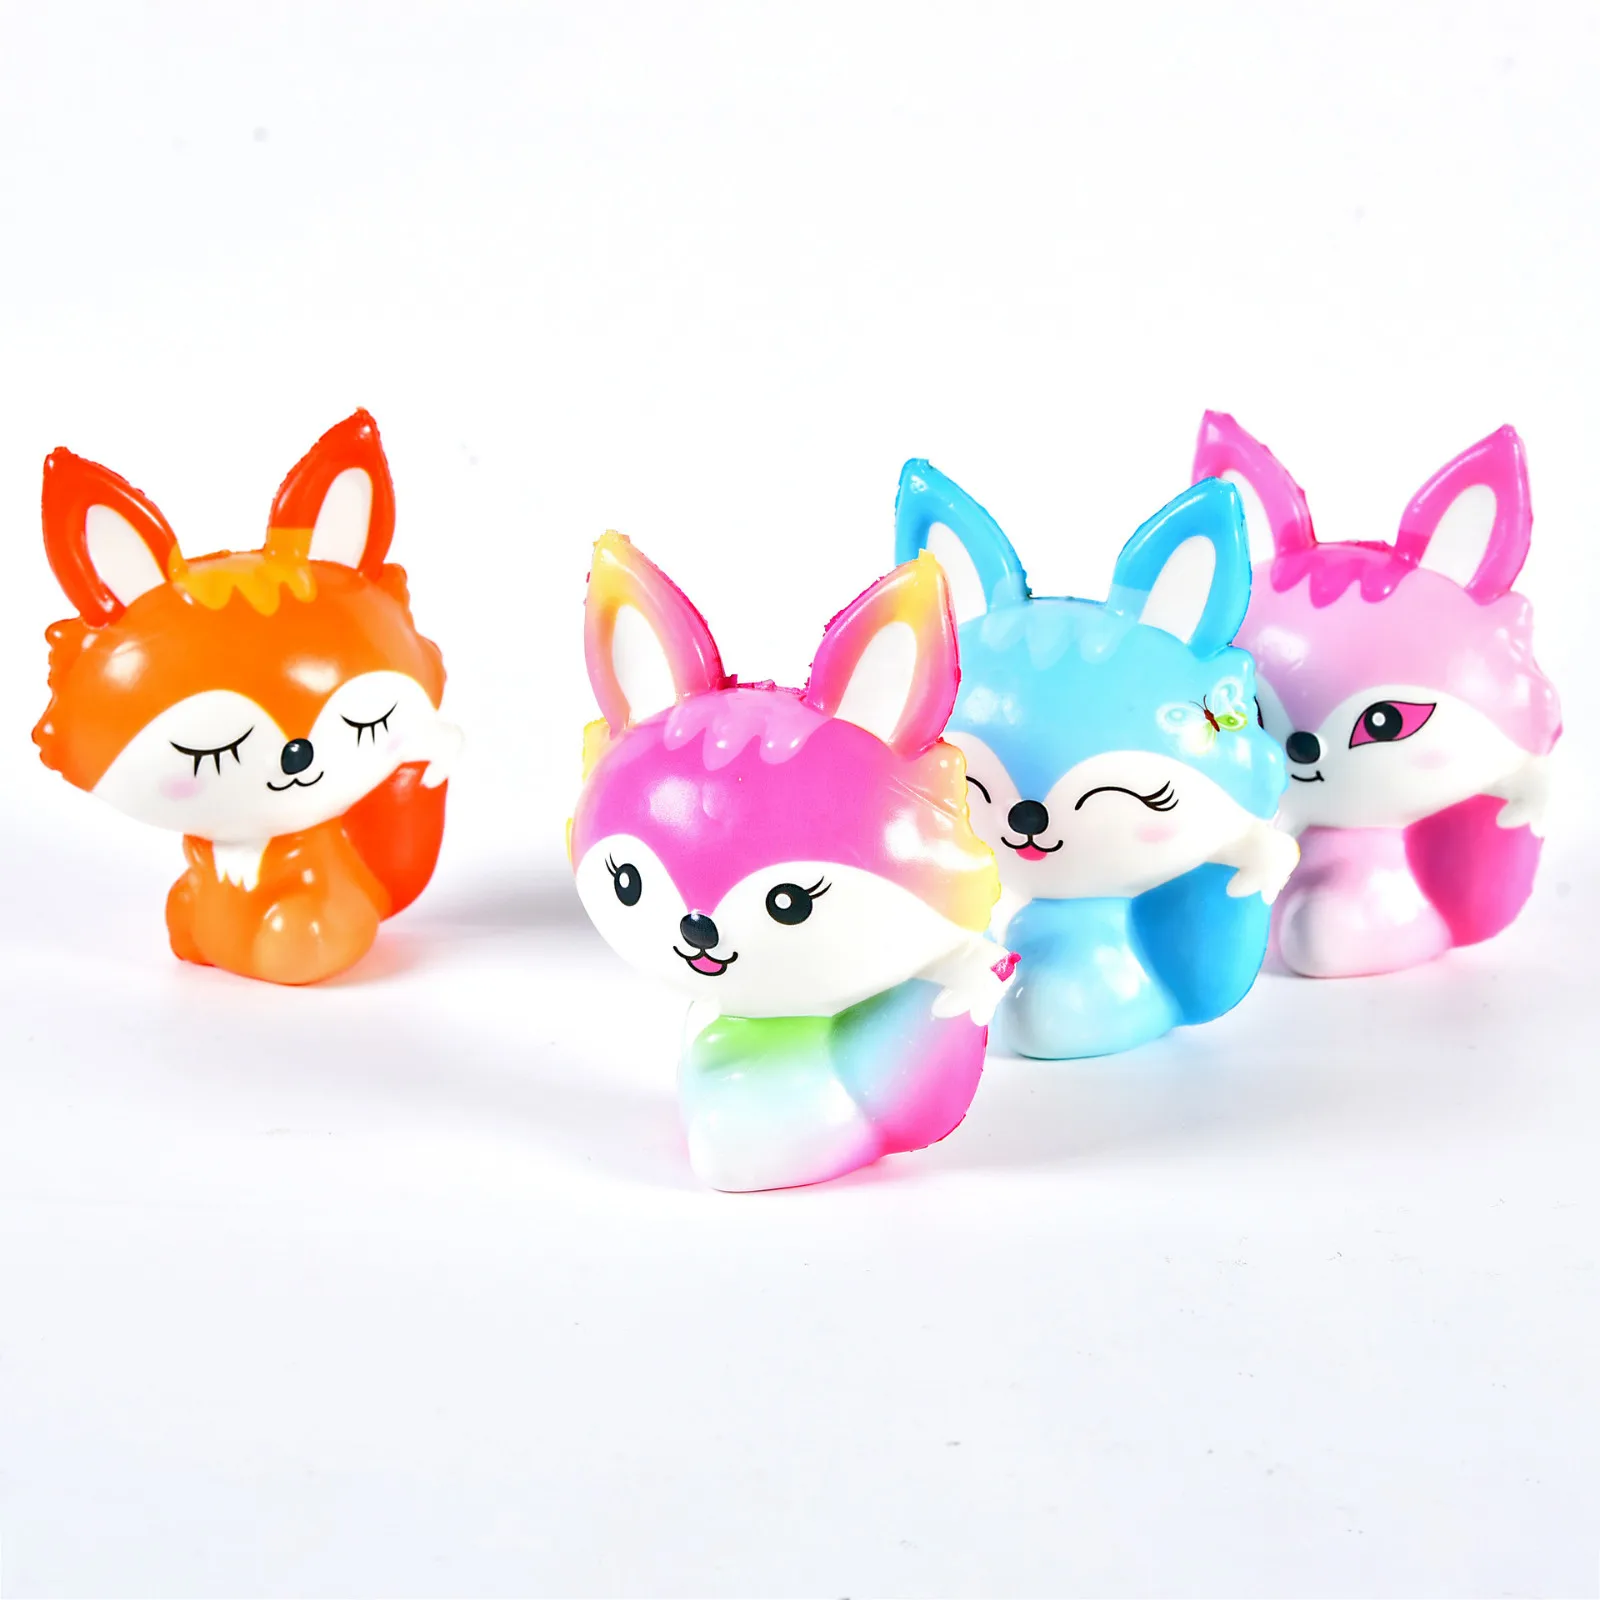 Игрушка для декомпрессии милые и мягкие Kawaii Fox медленно восстанавливающий крем ароматизированные игрушки для снятия стресса подарки Уникальные игрушки